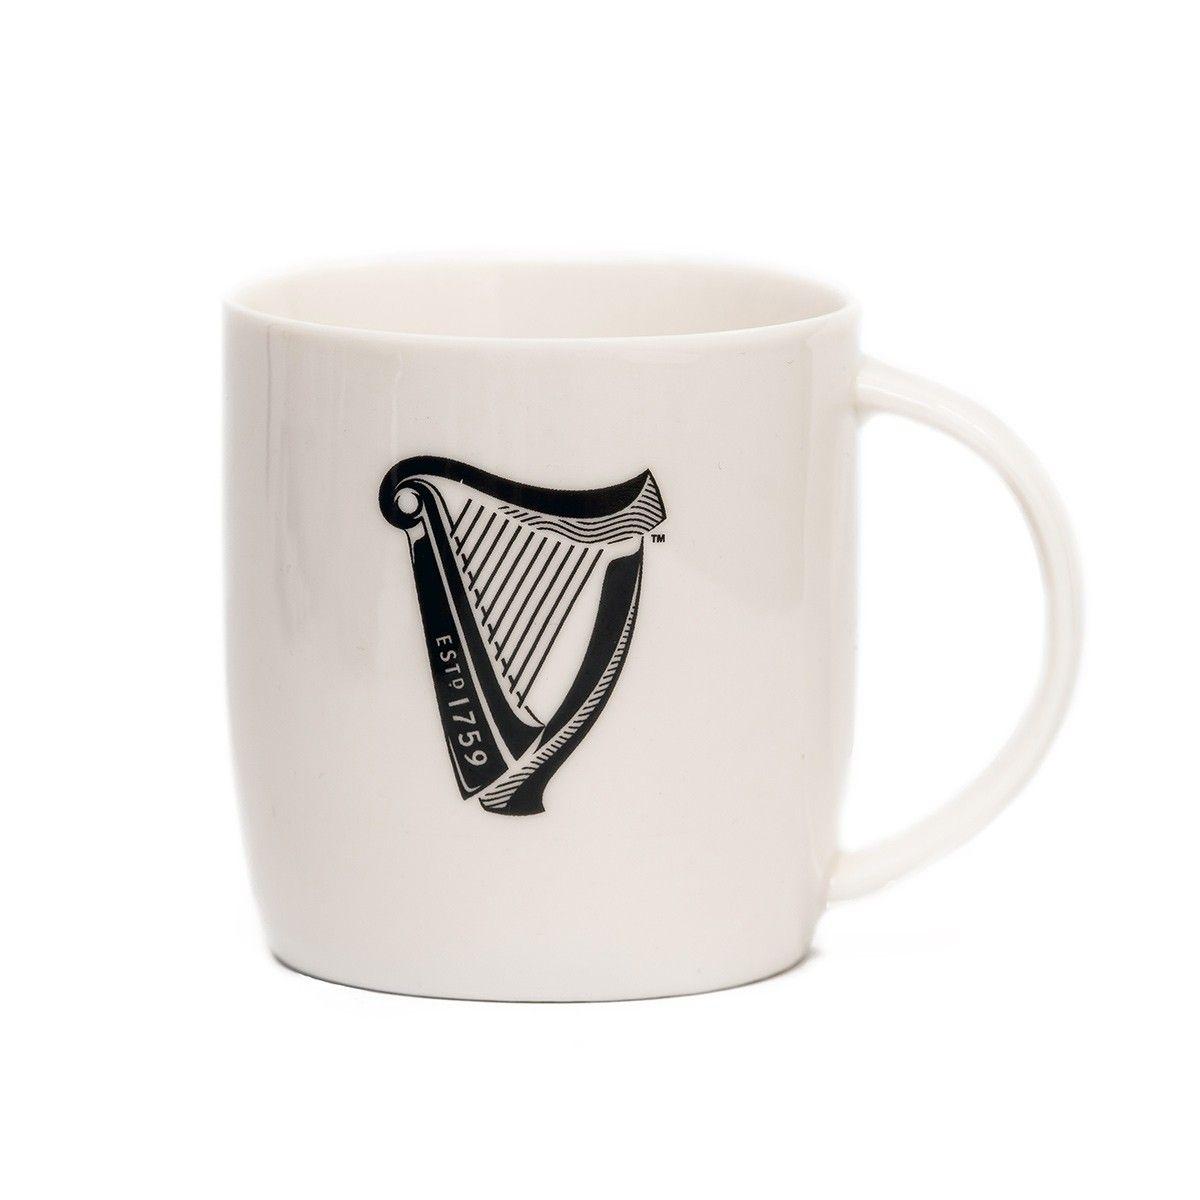 Harp Logo - Guinness White Mug with Black Harp Logo